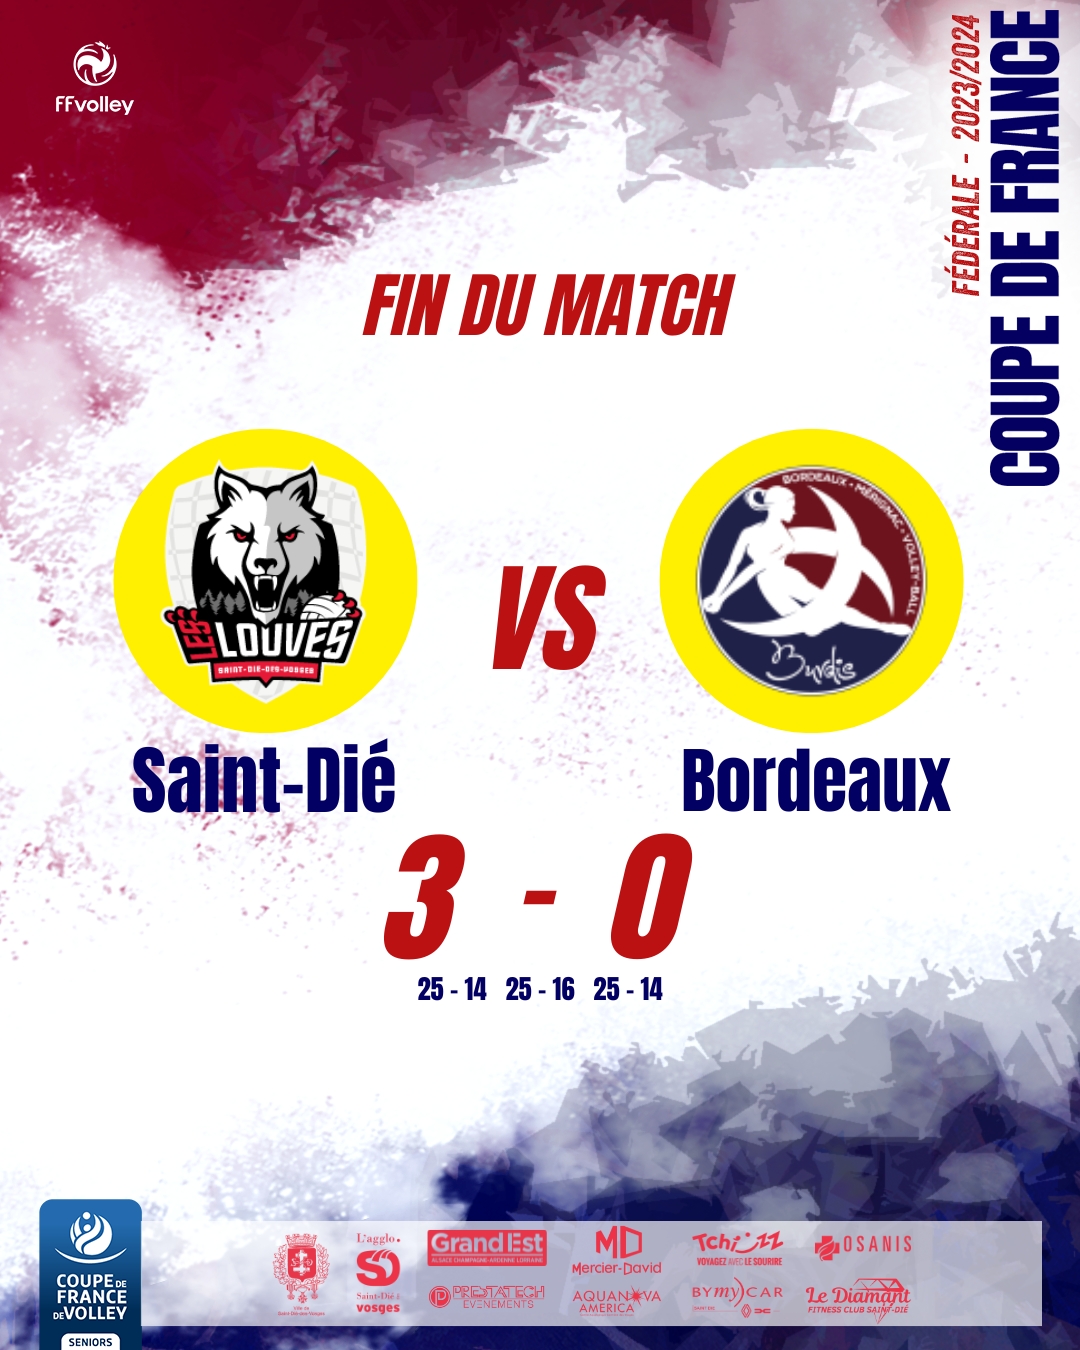 La Coupe de France Seniore de Volley pour les Louves de Saint-Dié contre Les Burdis de Bordeaux Mérignac